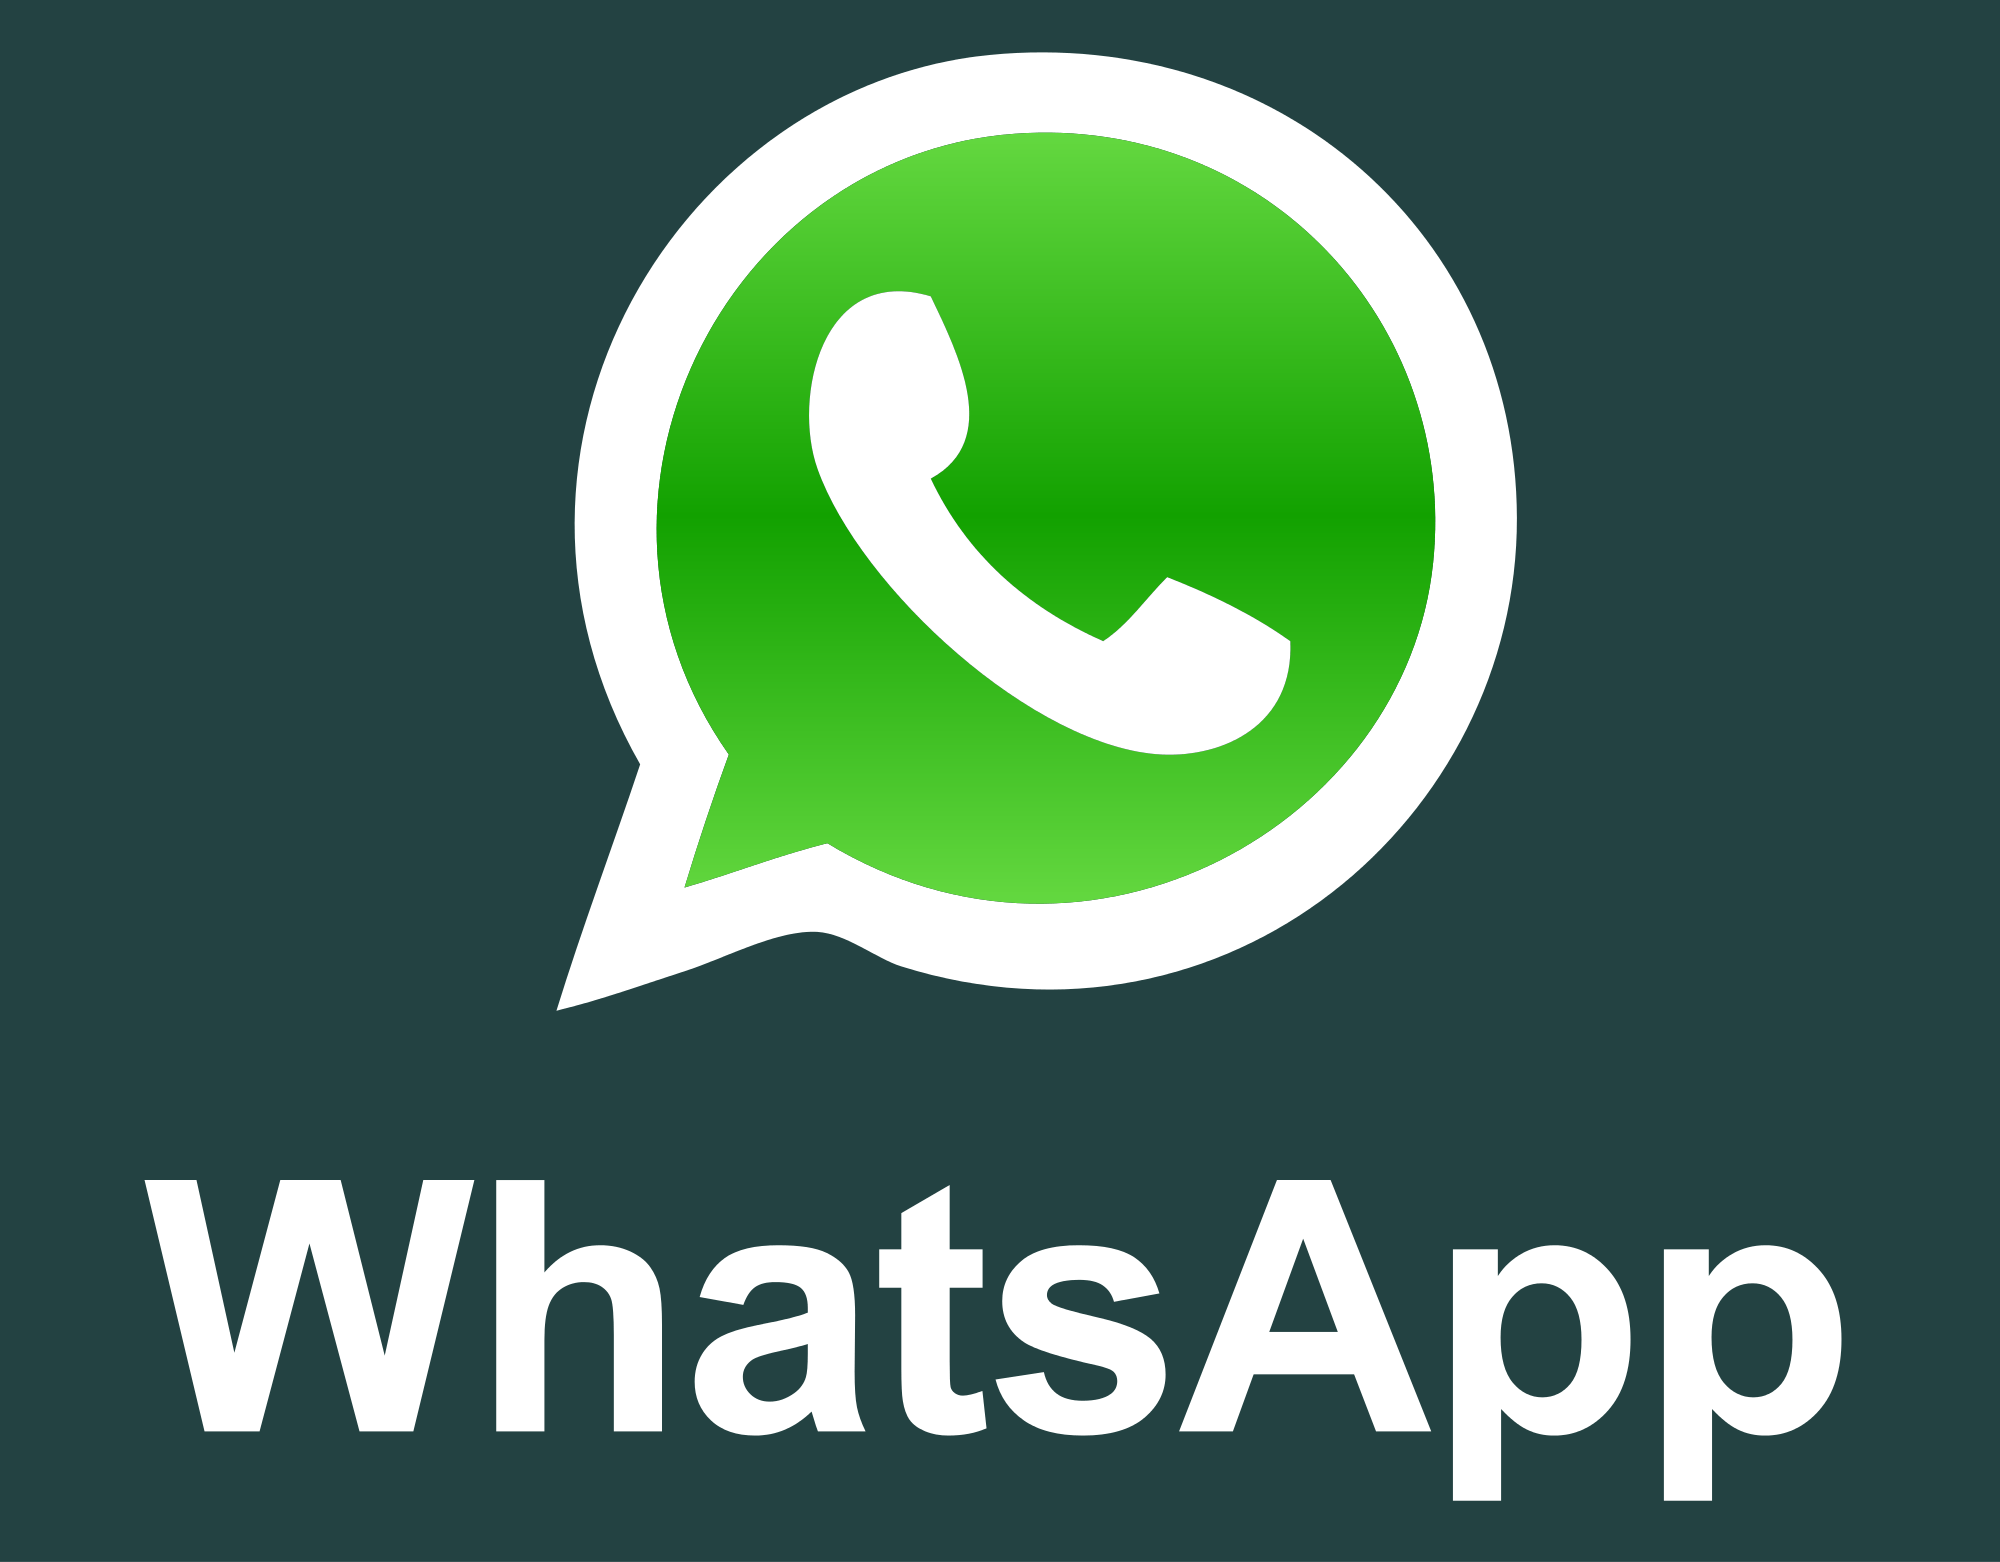 yo whatsapp 9.10 apk download